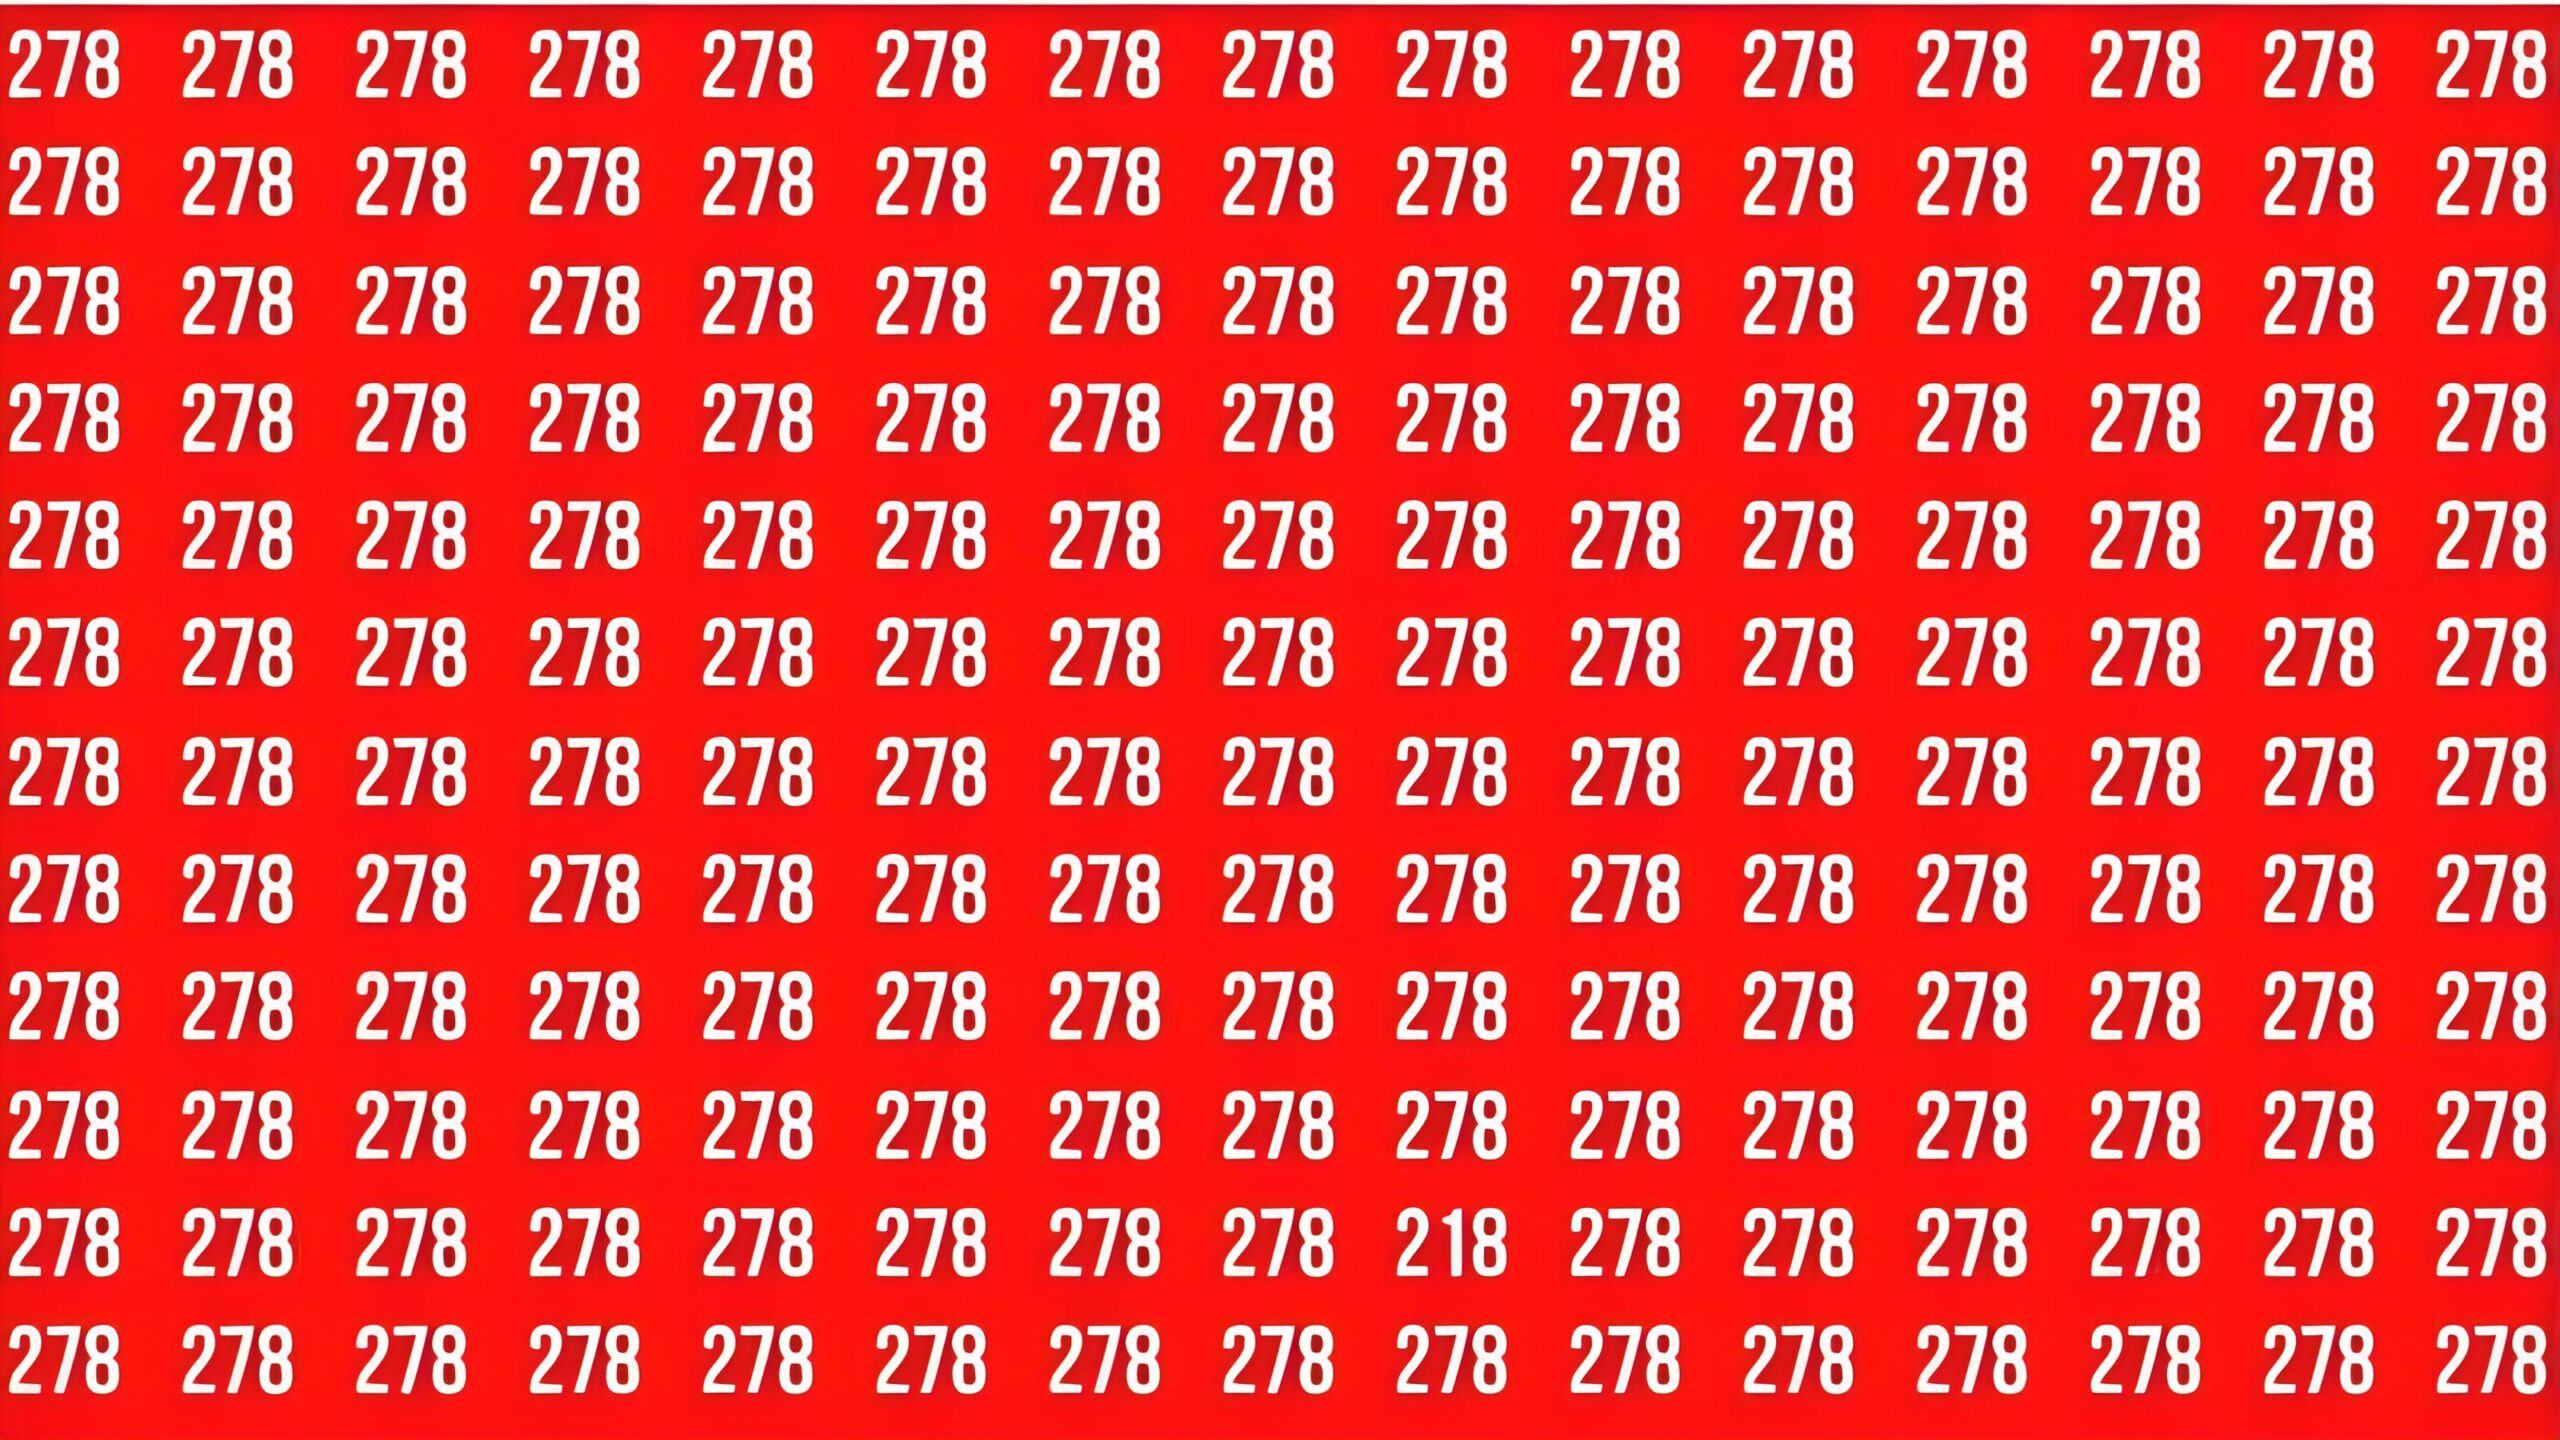 Desafio rápido: Consegue encontrar o número escondido em 15 segundos?